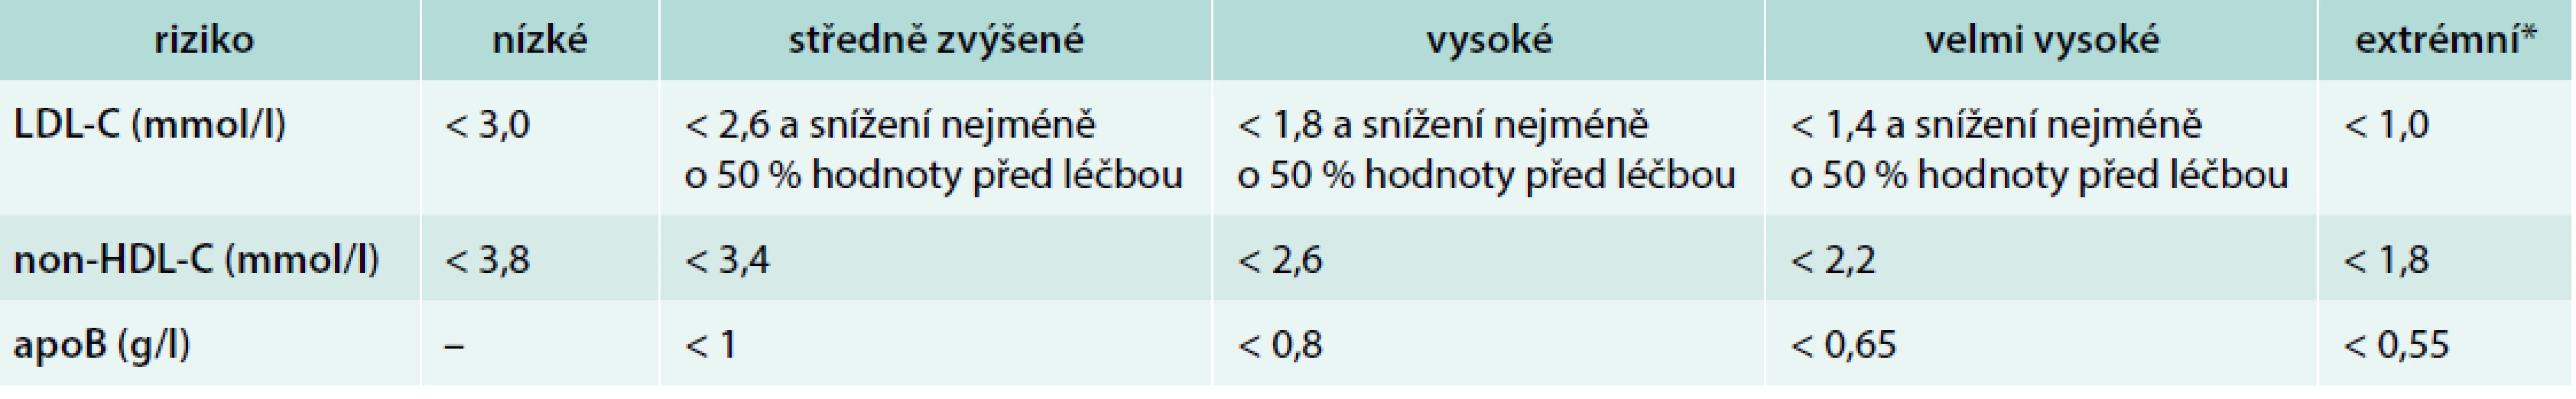 Cílové hodnoty LDL-C, non-HDL-C a apoB